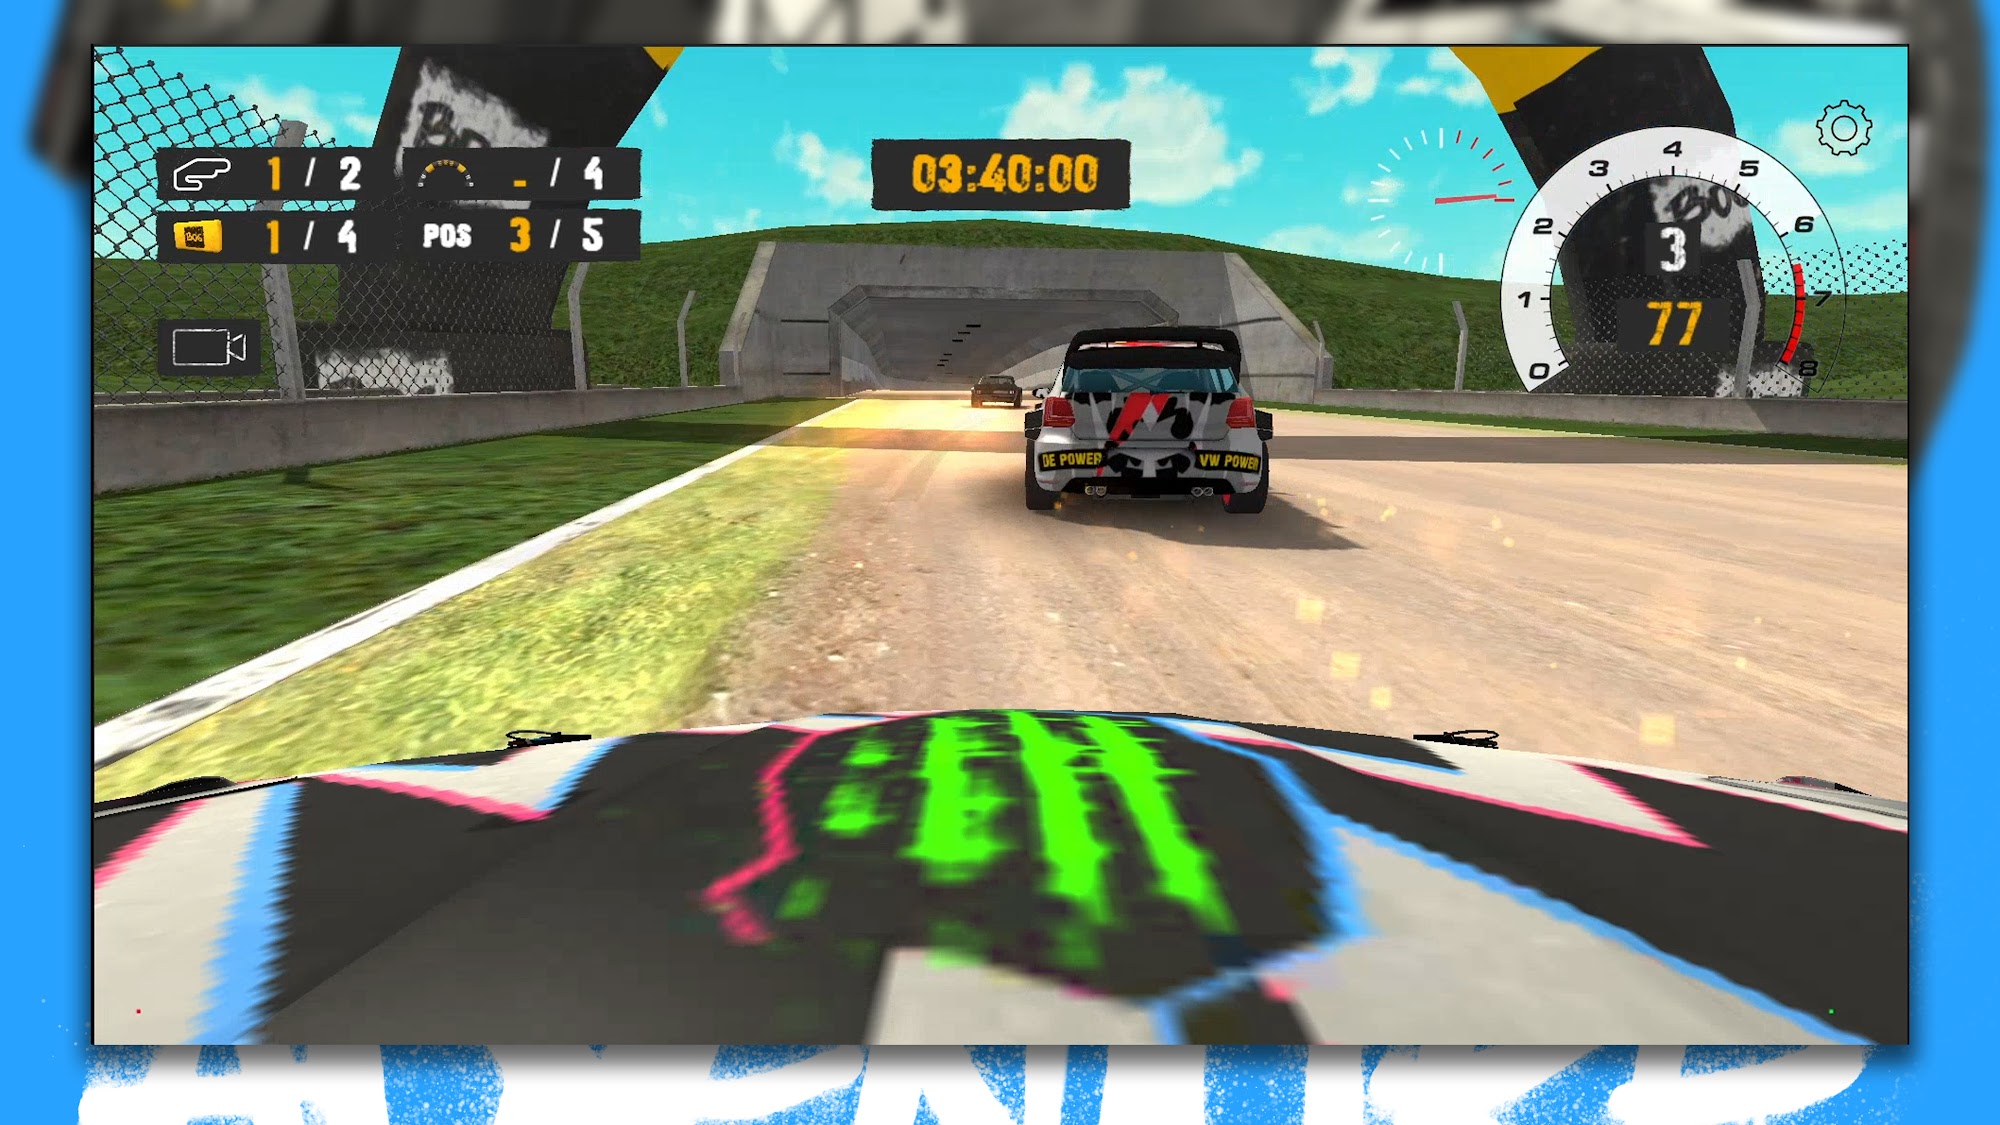 Rallycross Track Racing - Android game screenshots.